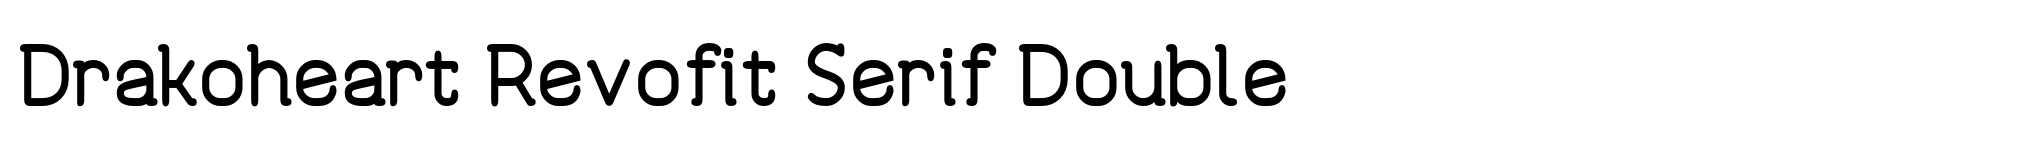 Drakoheart Revofit Serif Double image